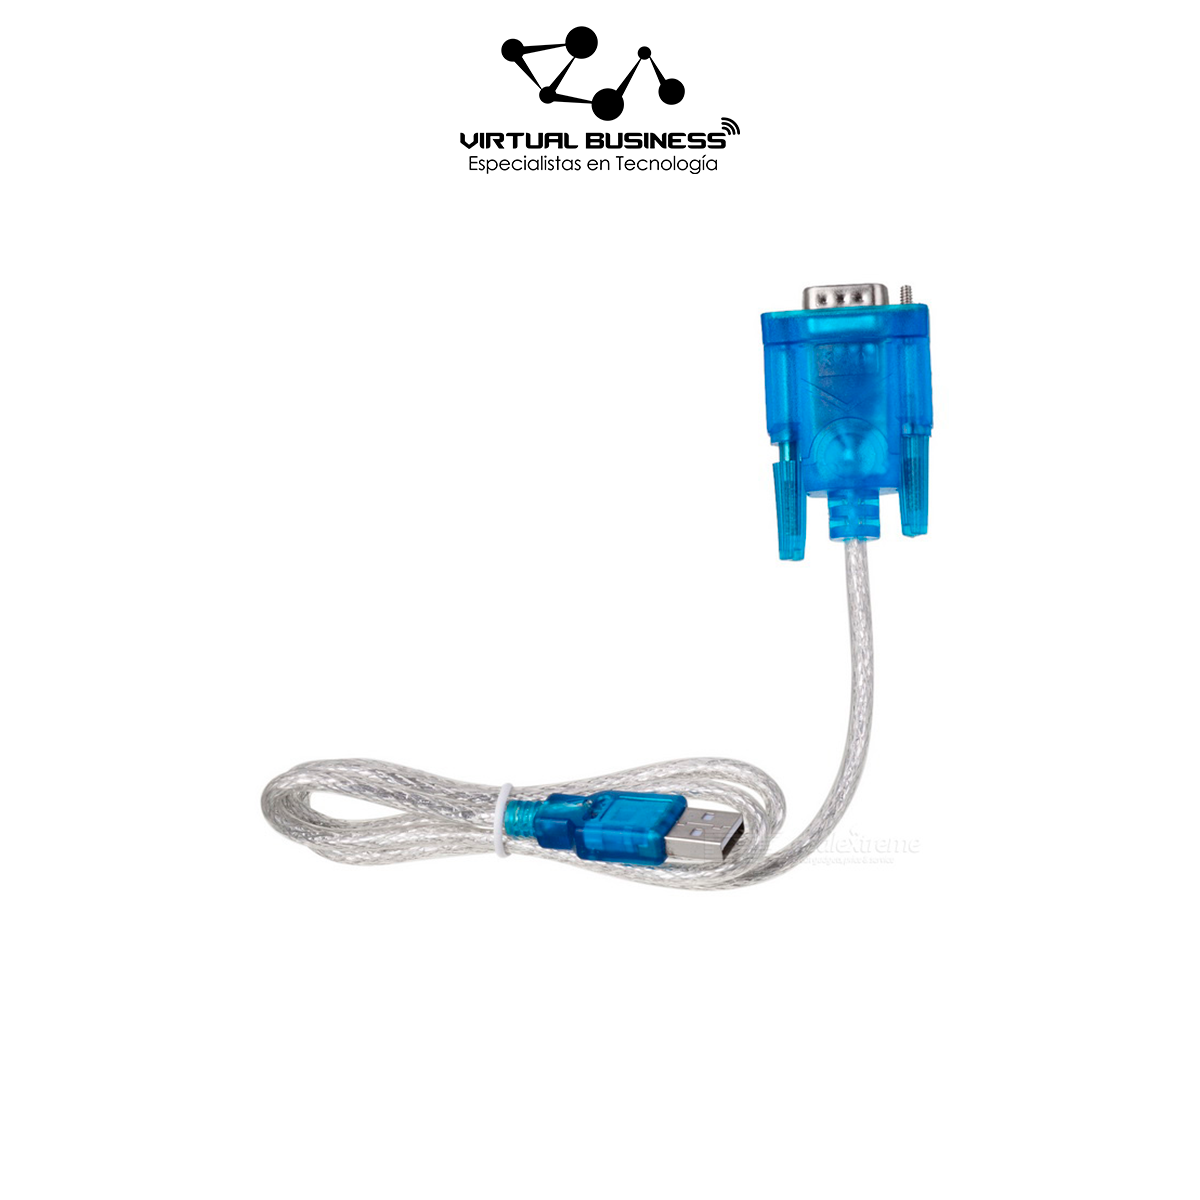 CABLE RS232/USB SARTORIUS POUR CONNECTION PC - Laboratoires Hu